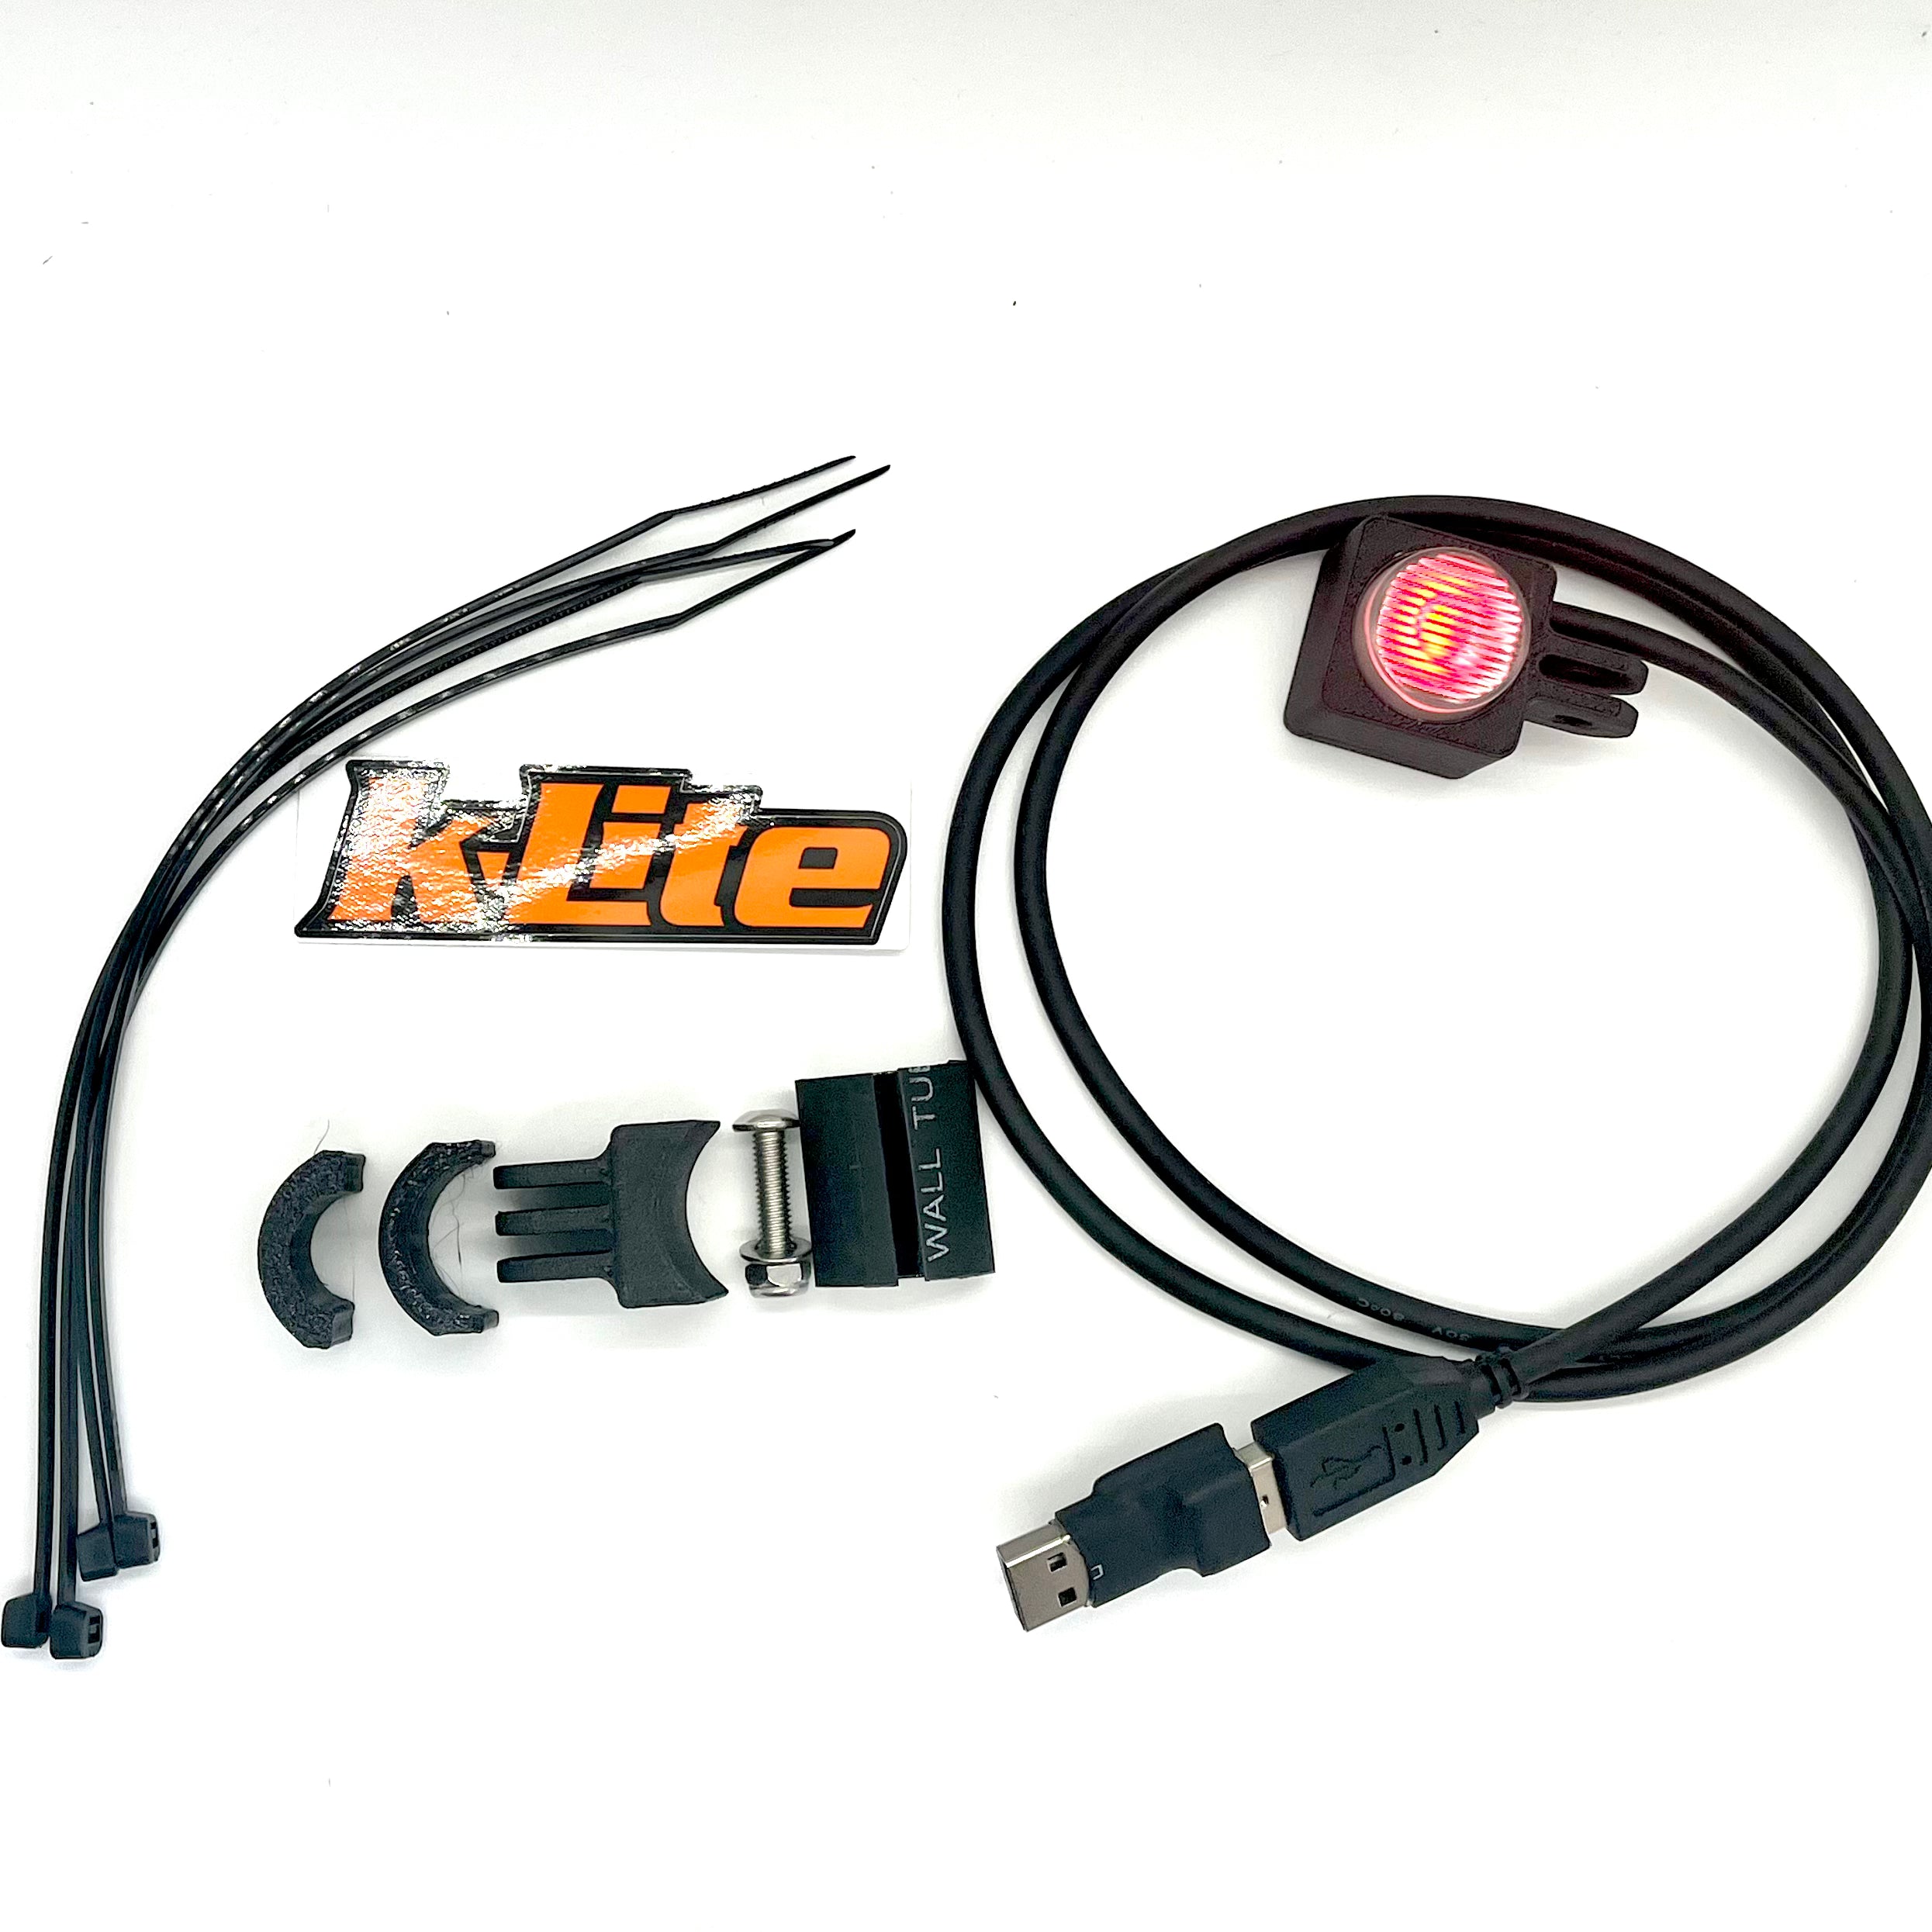 klite-qube-v2-0-dynamo-powered-rear-safety-blinker-kit